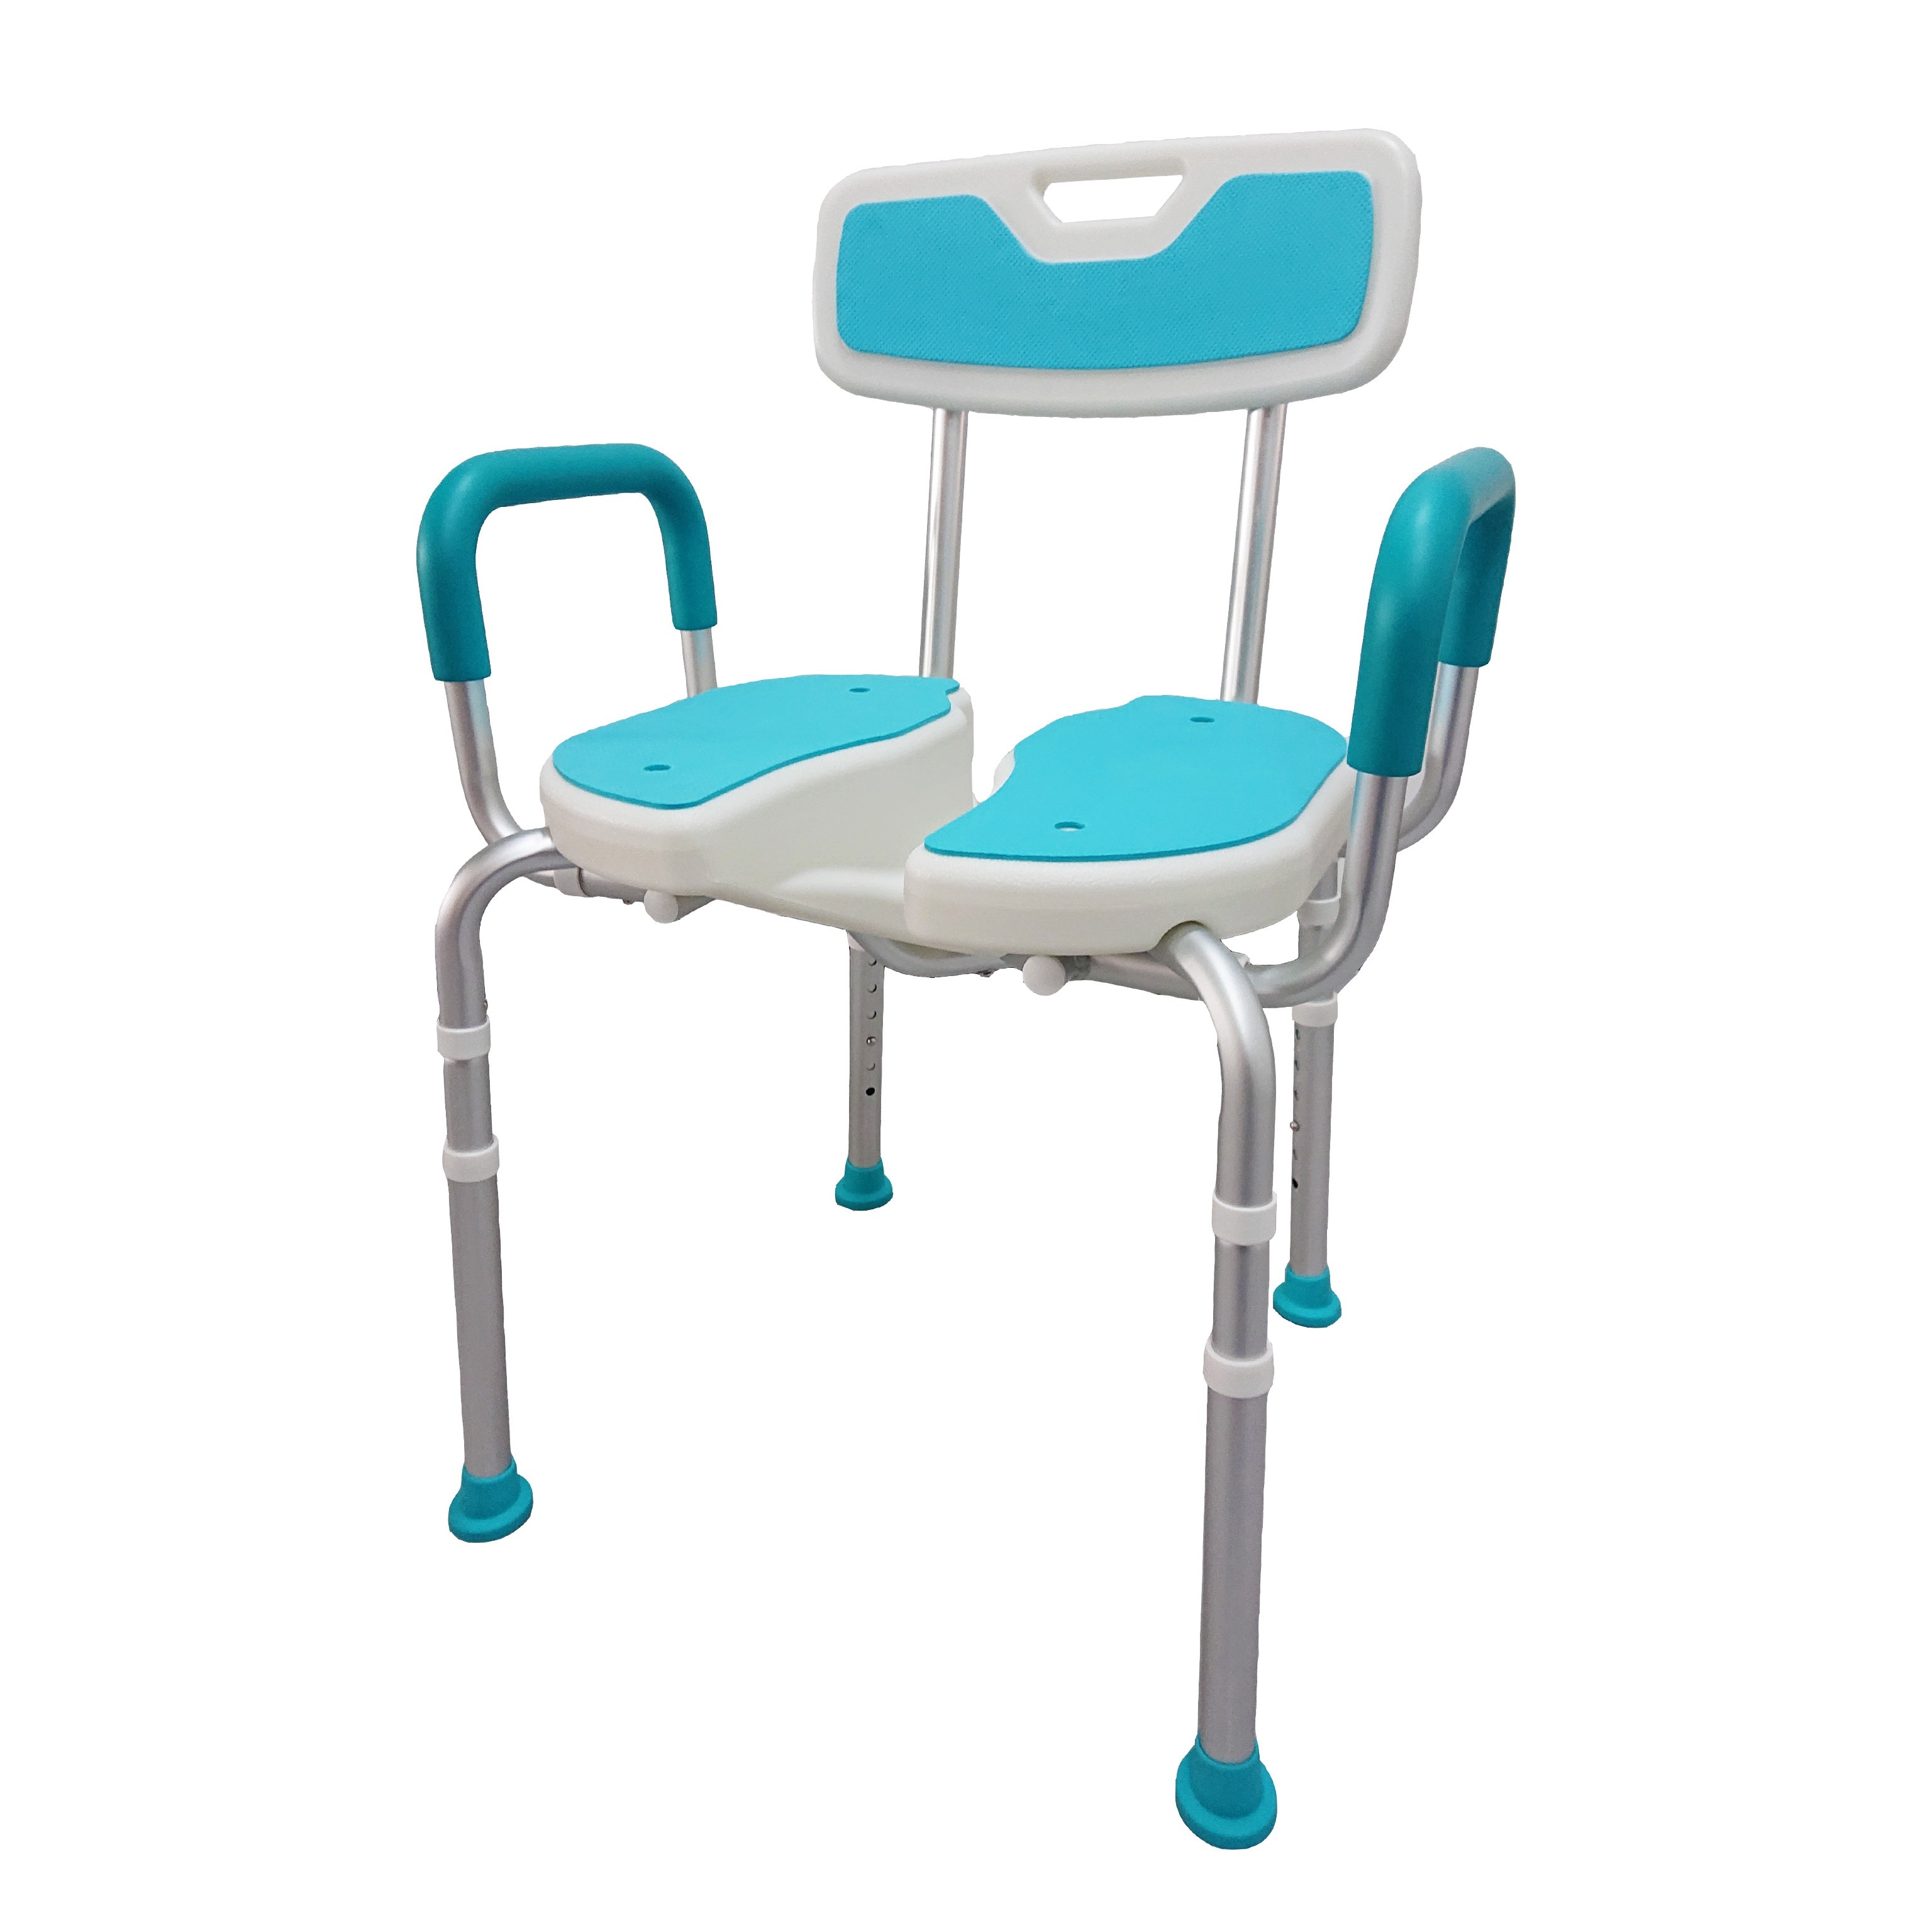  Medokare Silla de ducha de alta calidad para ducha interior,  silla de baño y asiento de ducha de grado médico para personas mayores,  ancianos, discapacitados y discapacitados, banco de soporte 